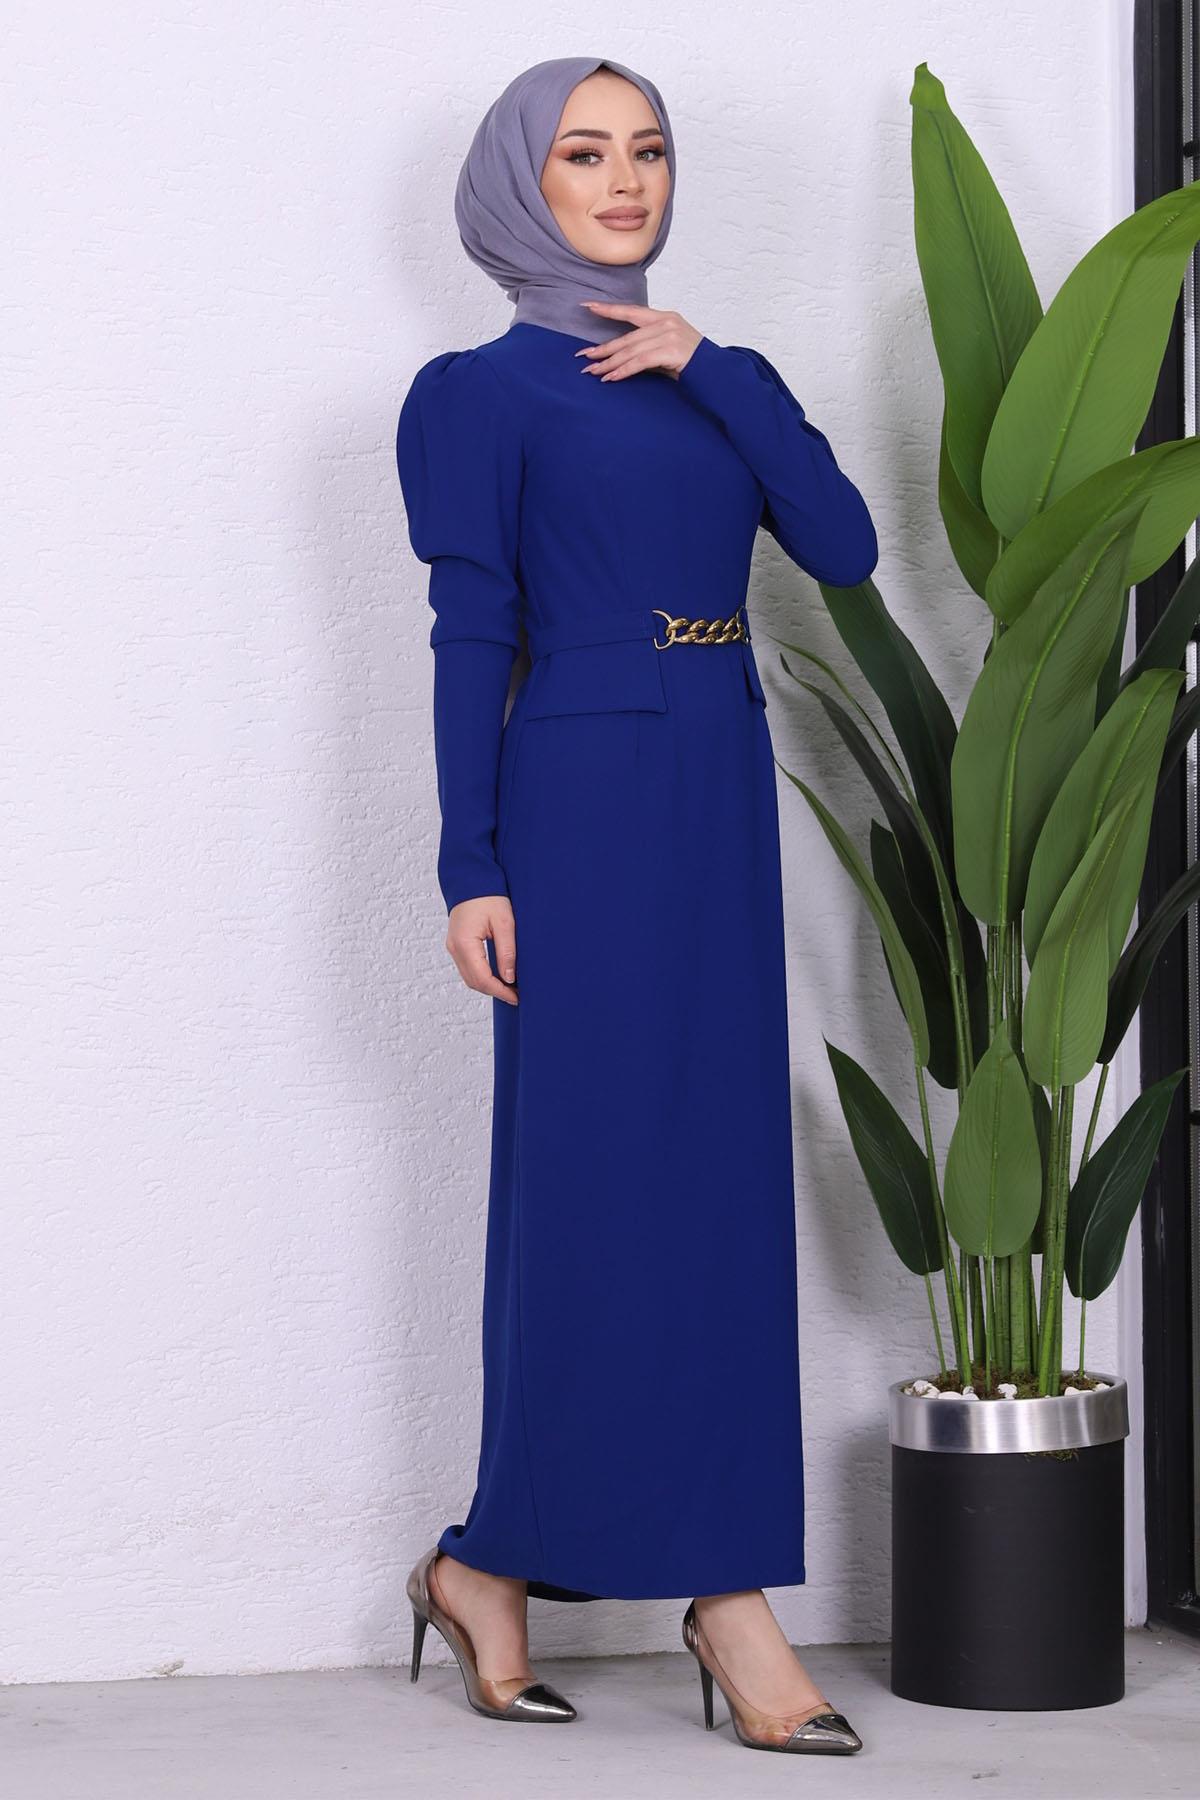 Önü Zincir Detaylı Kalem Elbise-SAKS MAVİ - Moda Ensar